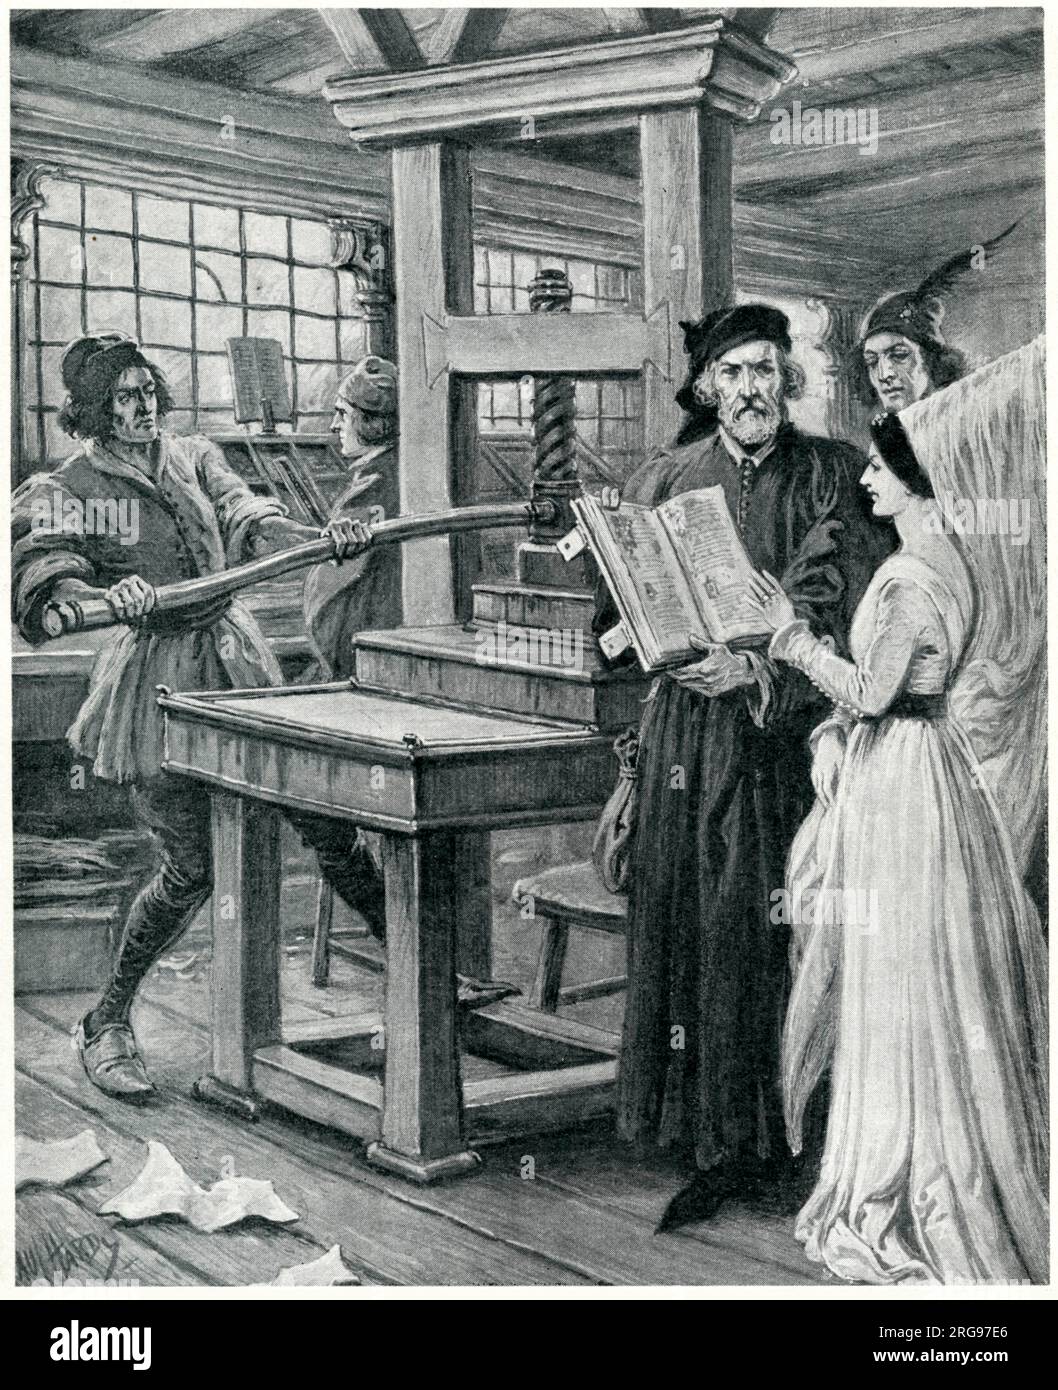 William Caxton et sa presse à imprimer, Westminster, Londres. Ses visiteurs représentés ici sont probablement le roi Édouard IV et sa reine, Elizabeth Woodville. Banque D'Images